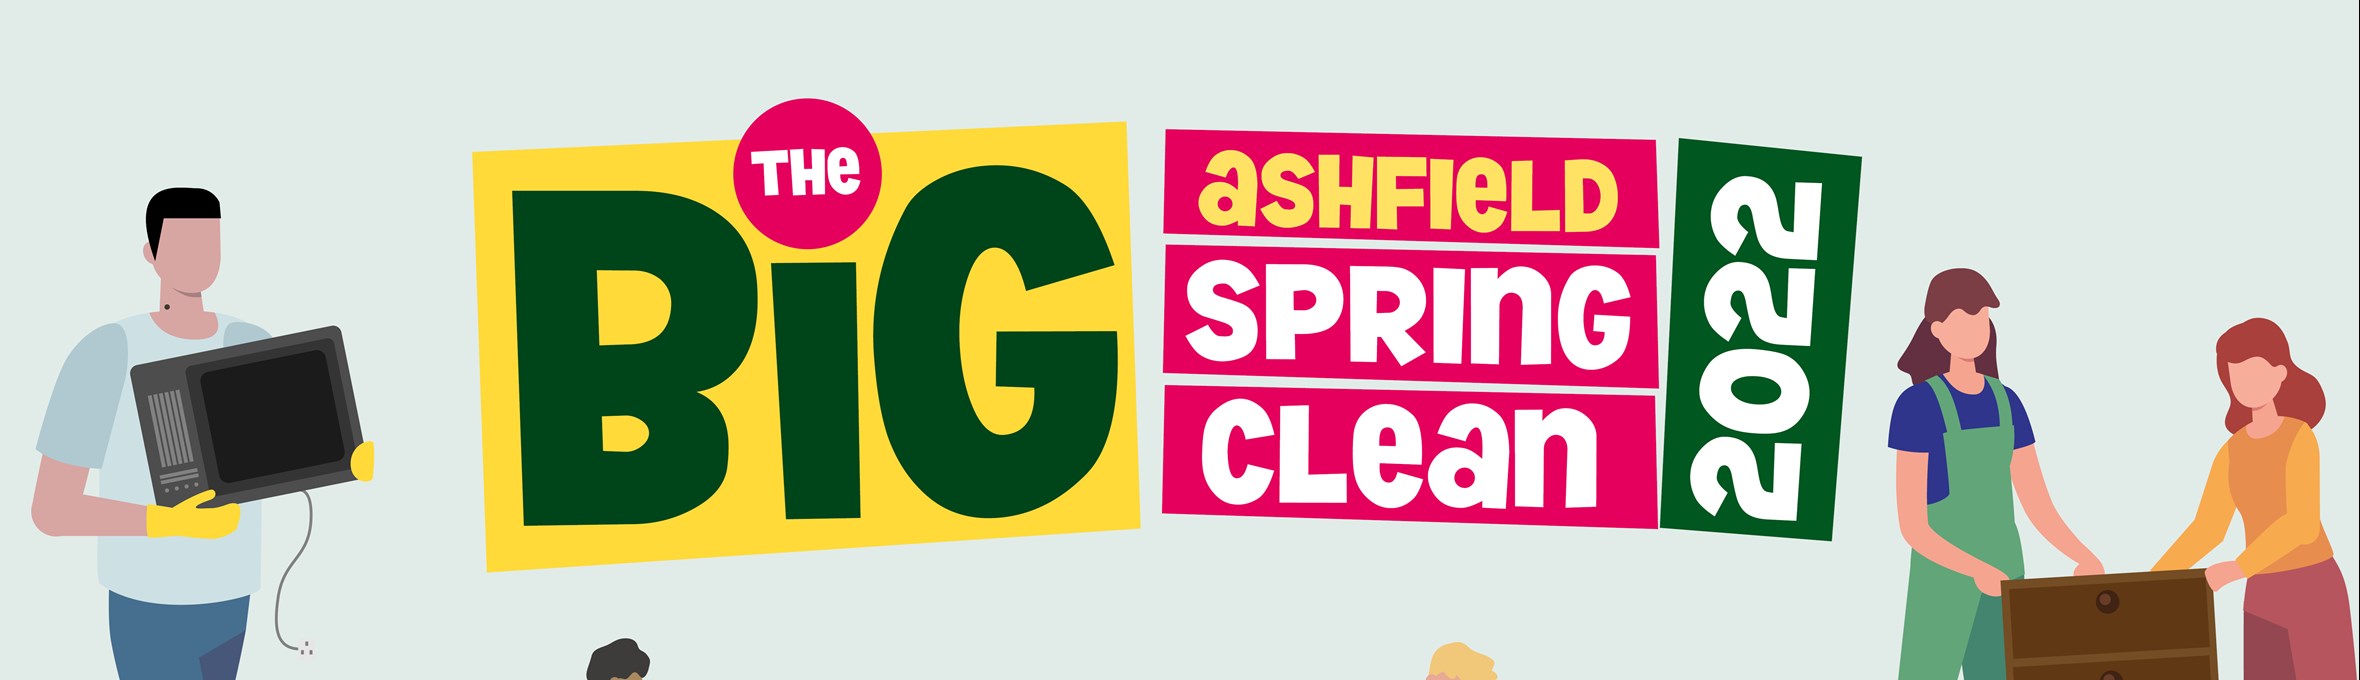 Bring Ashfield Spring Clean logo